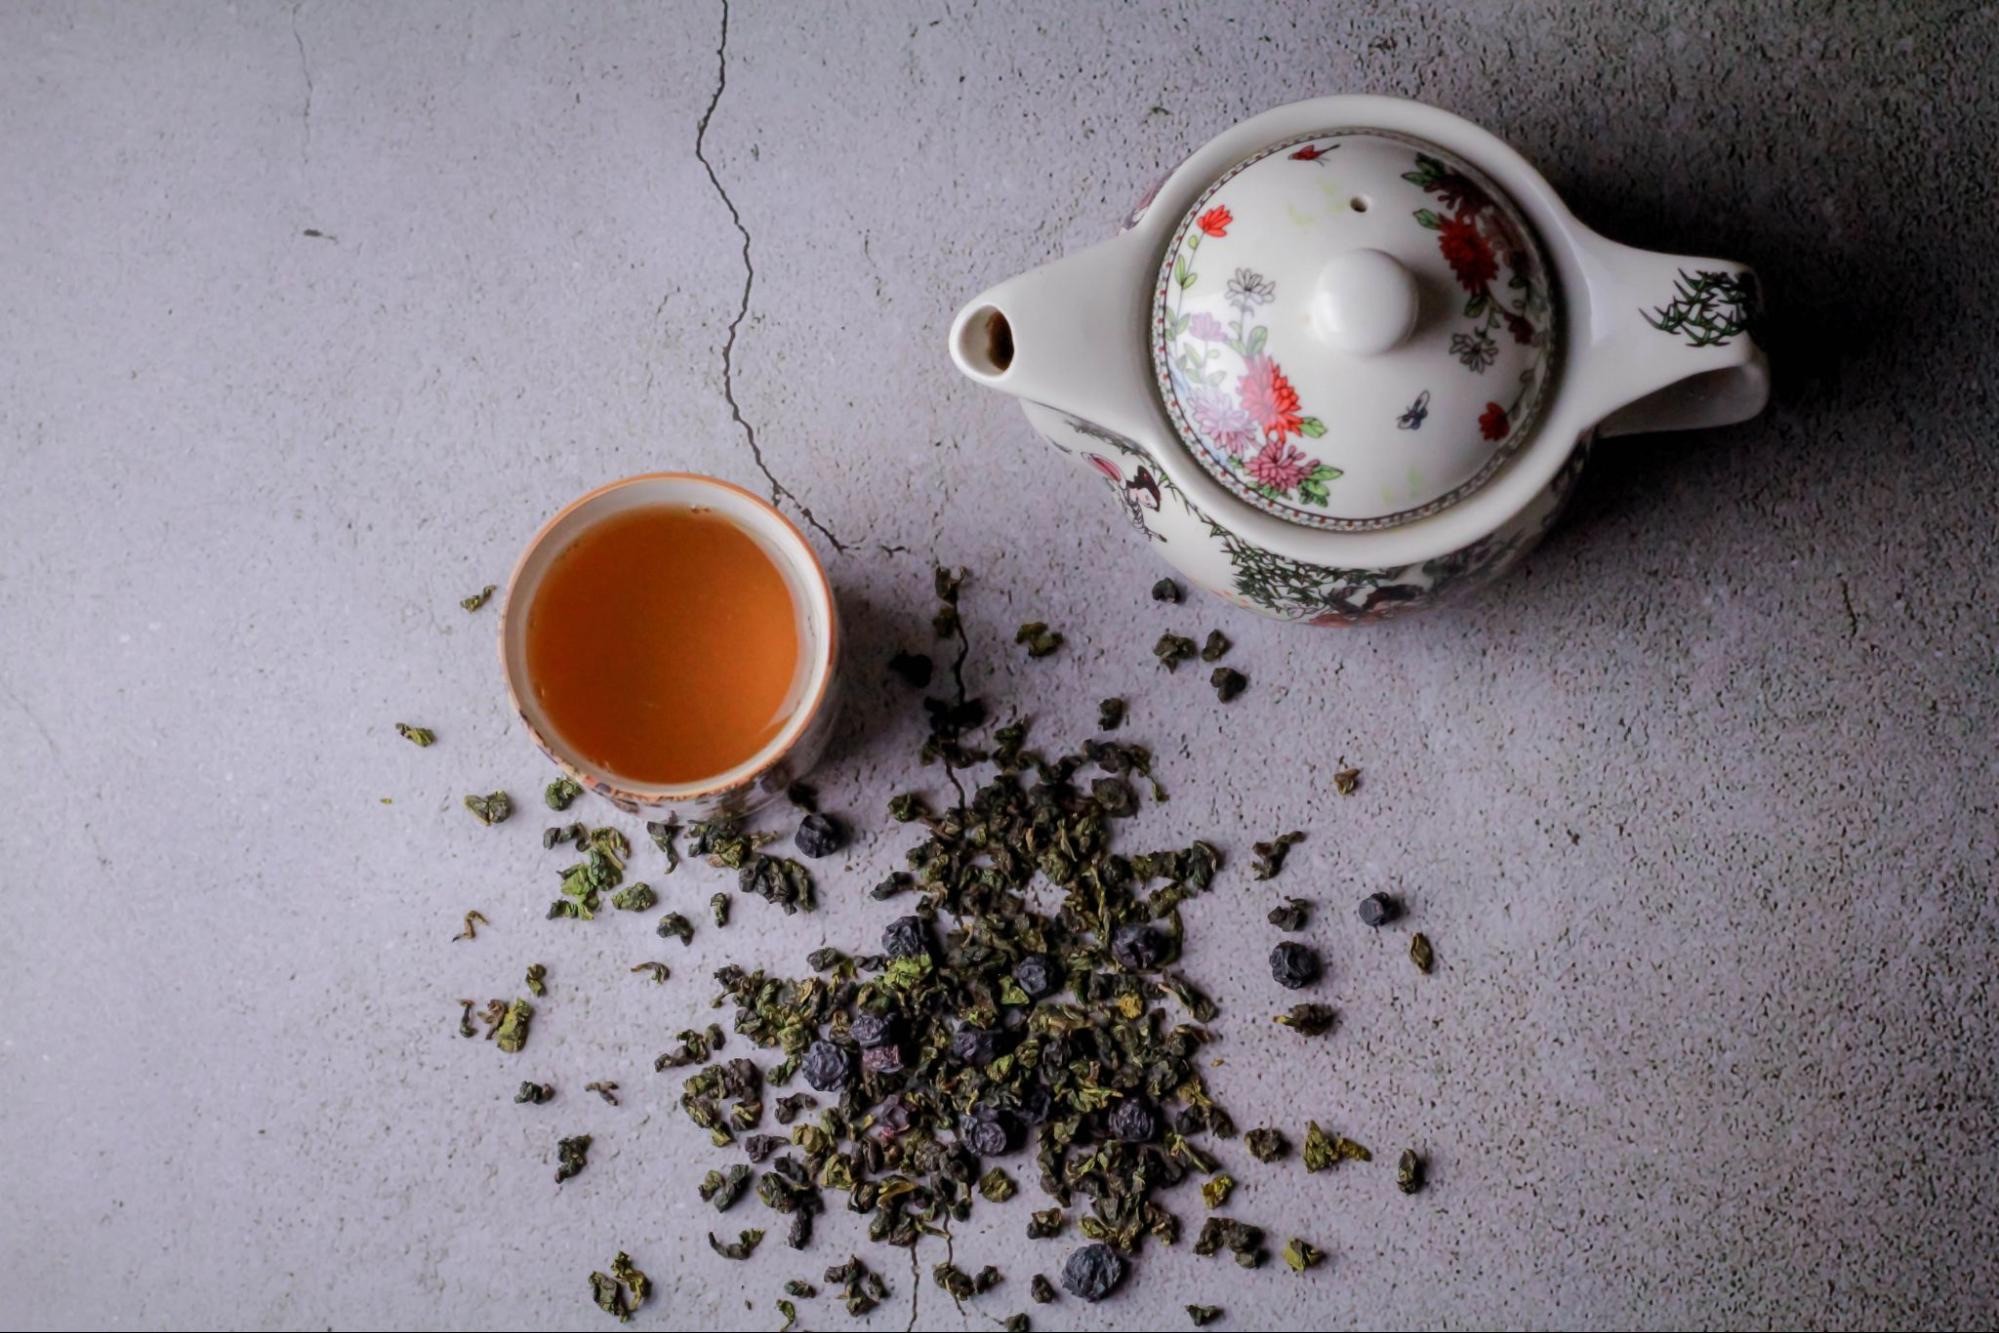 Улун — бирюзовый чай родом из Китая